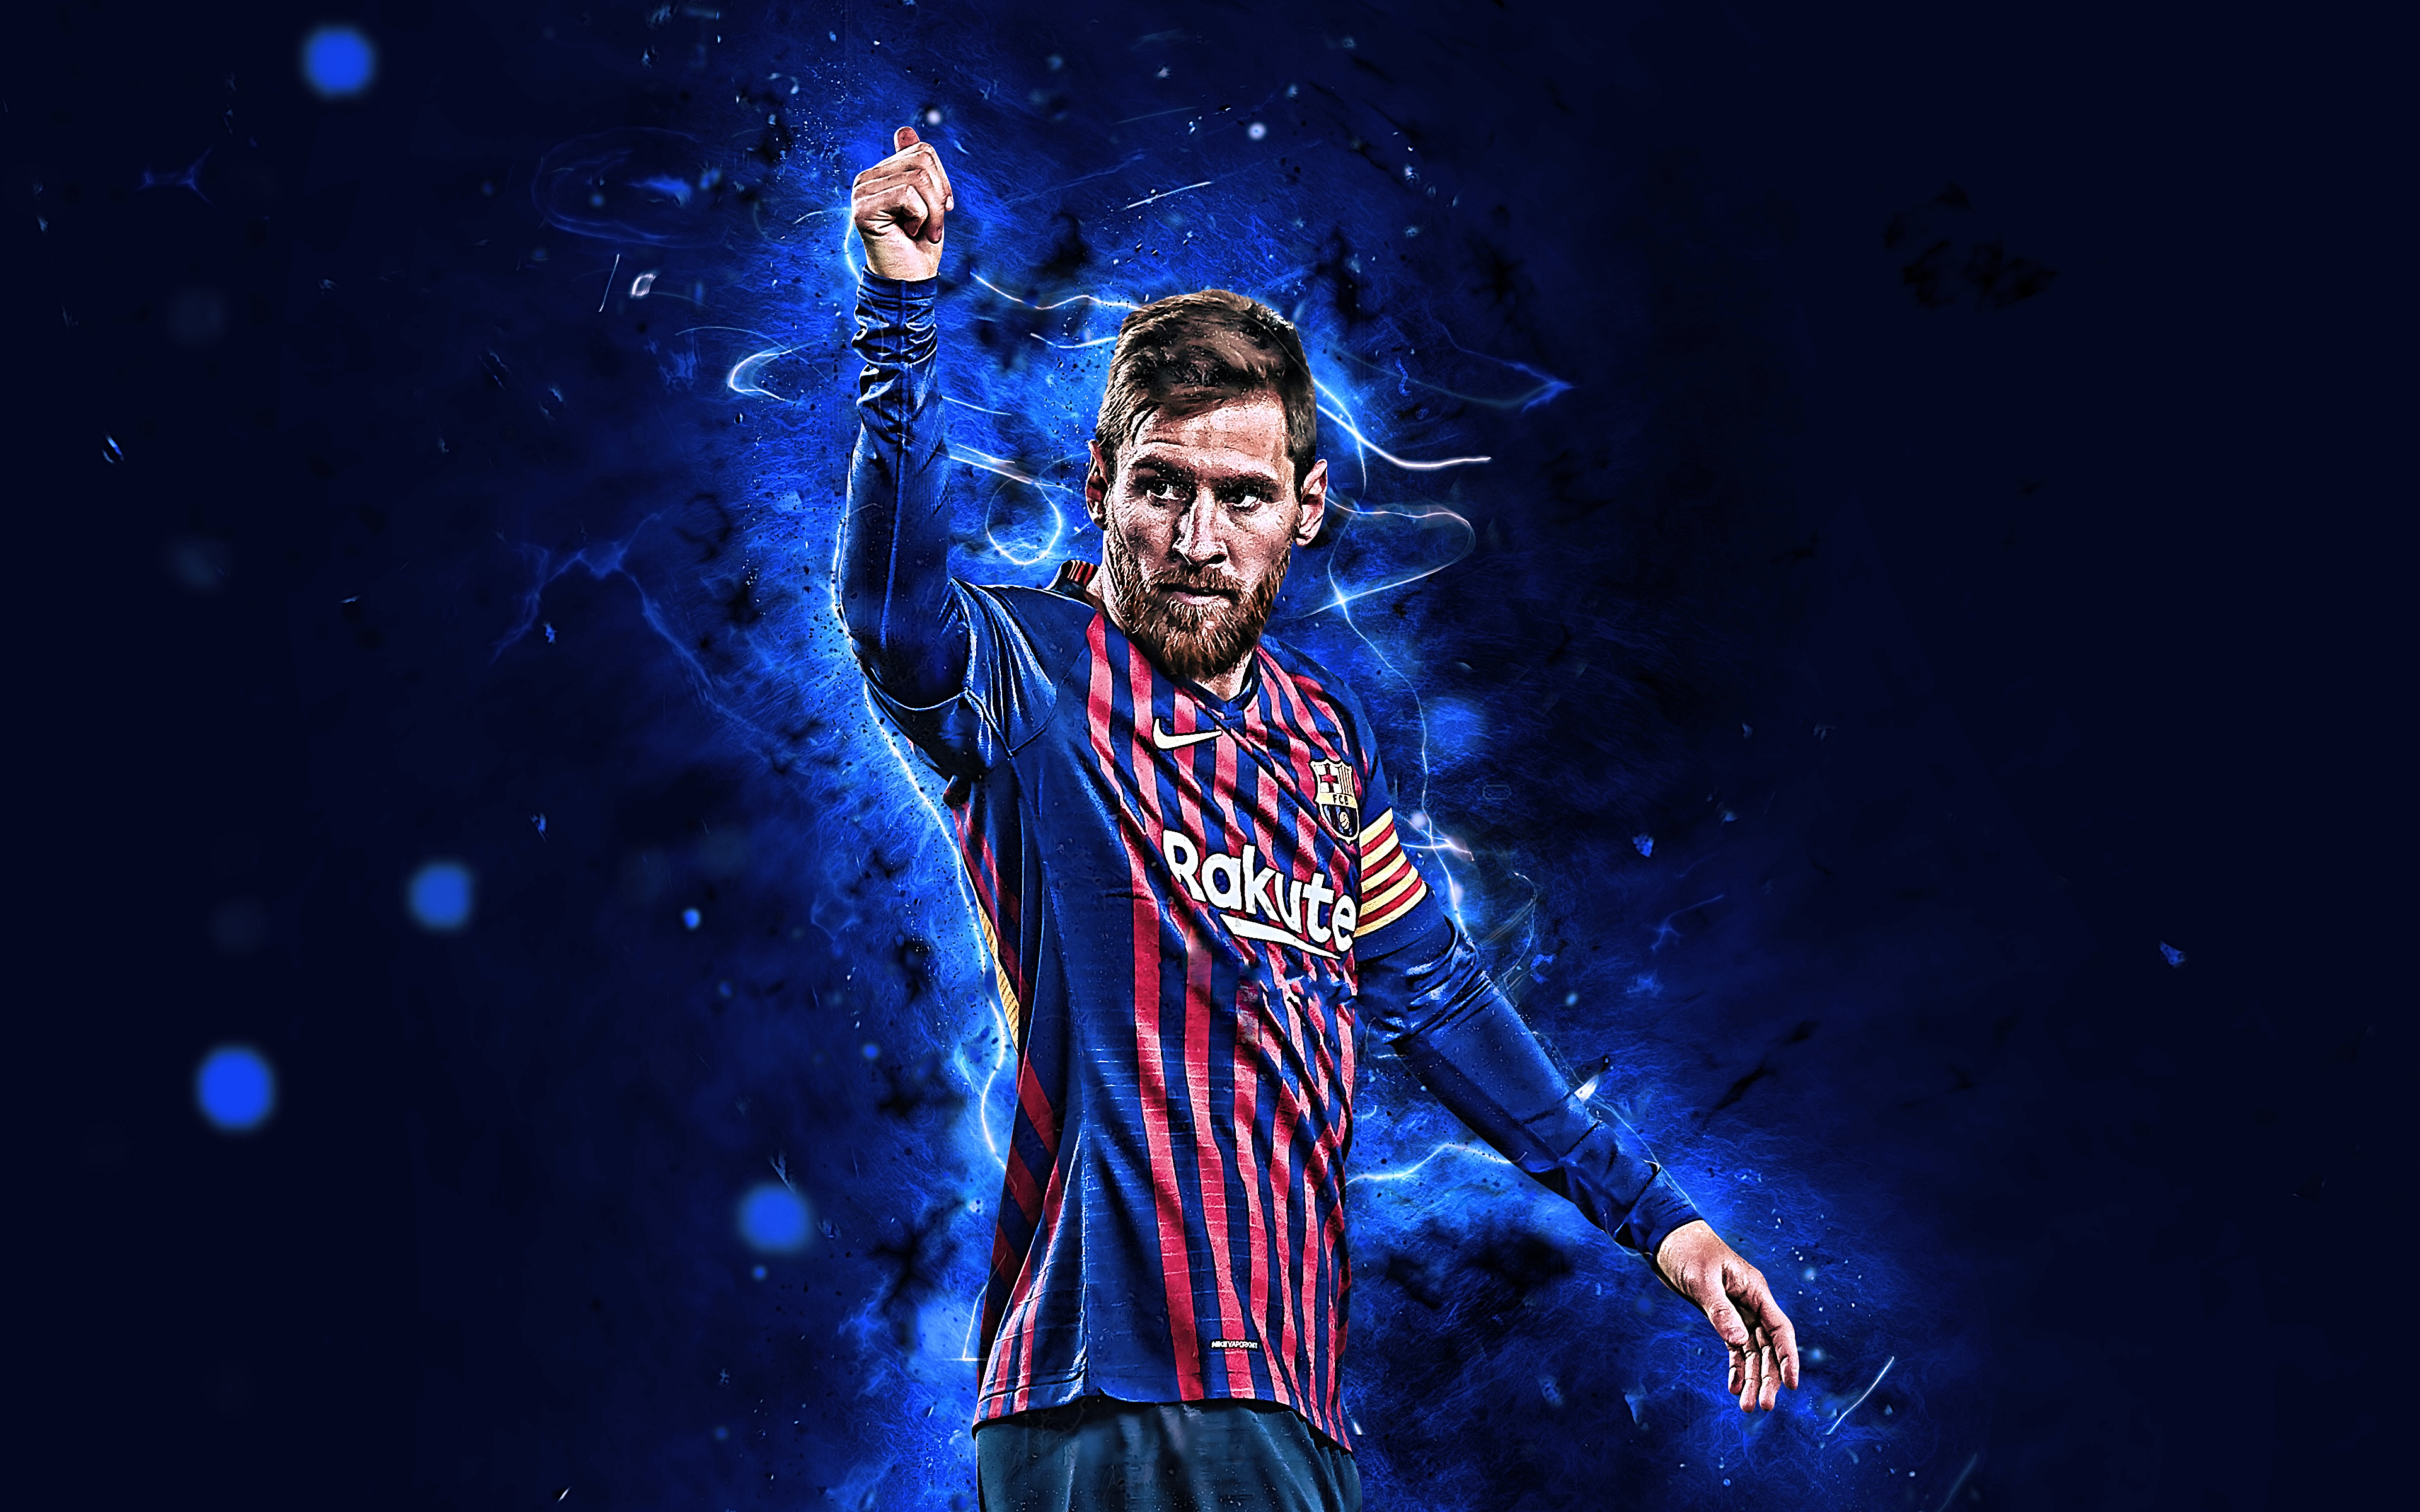 Messi: Ngắm người hùng bóng đá Argentina - Lionel Messi với những pha bóng tuyệt đỉnh, đẳng cấp không thể bỏ qua! Hãy đến với bức ảnh của Messi, bạn sẽ được tận hưởng niềm đam mê bóng đá đích thực.